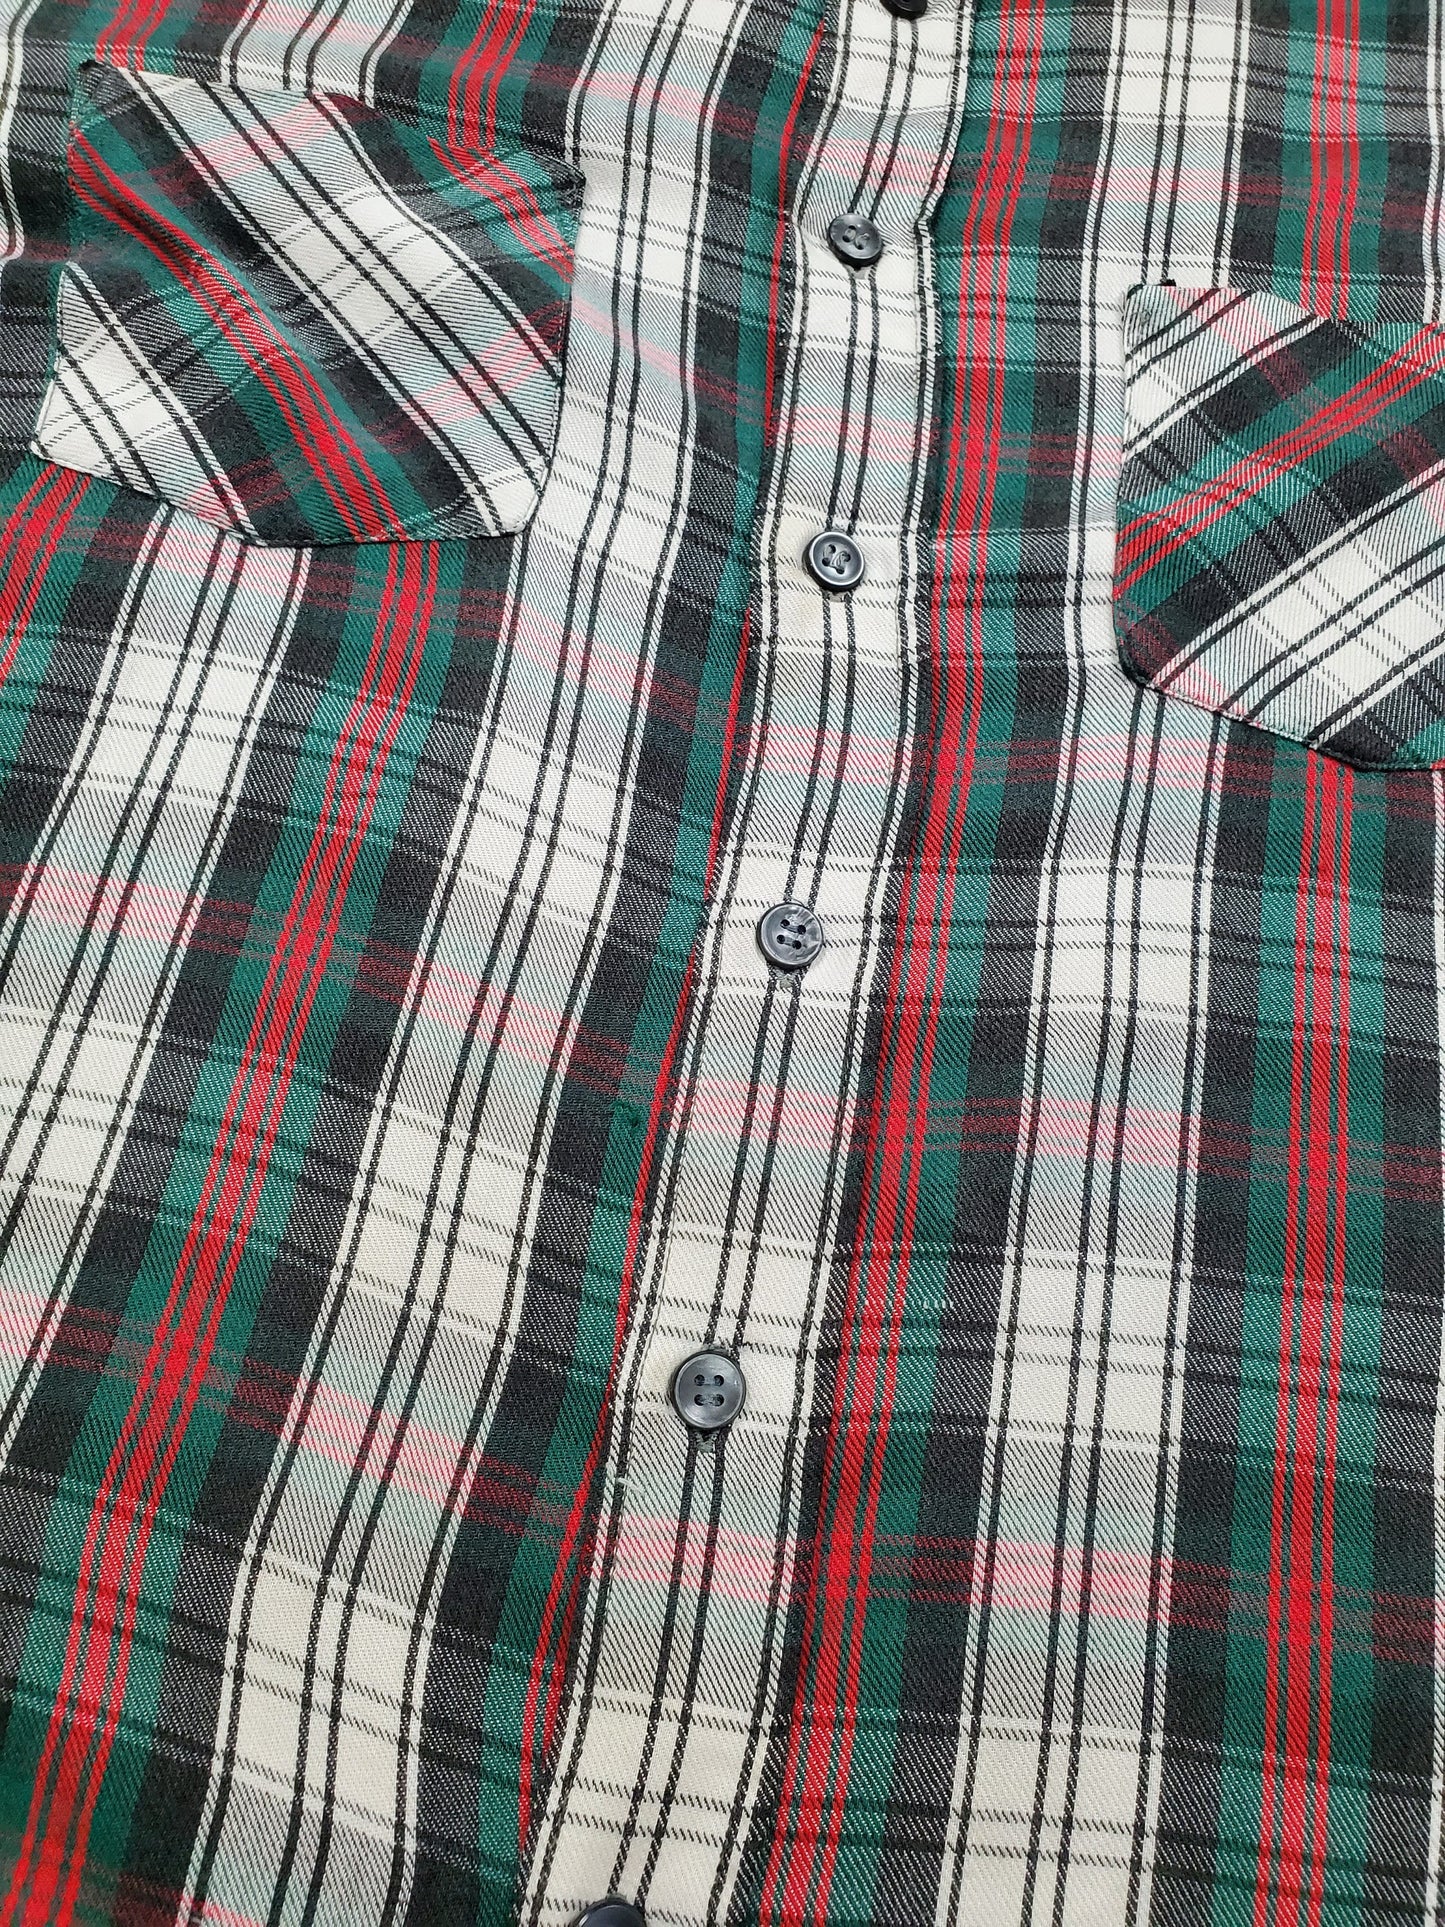 1970s/1980s K-Mart Plaid Shirt Size L